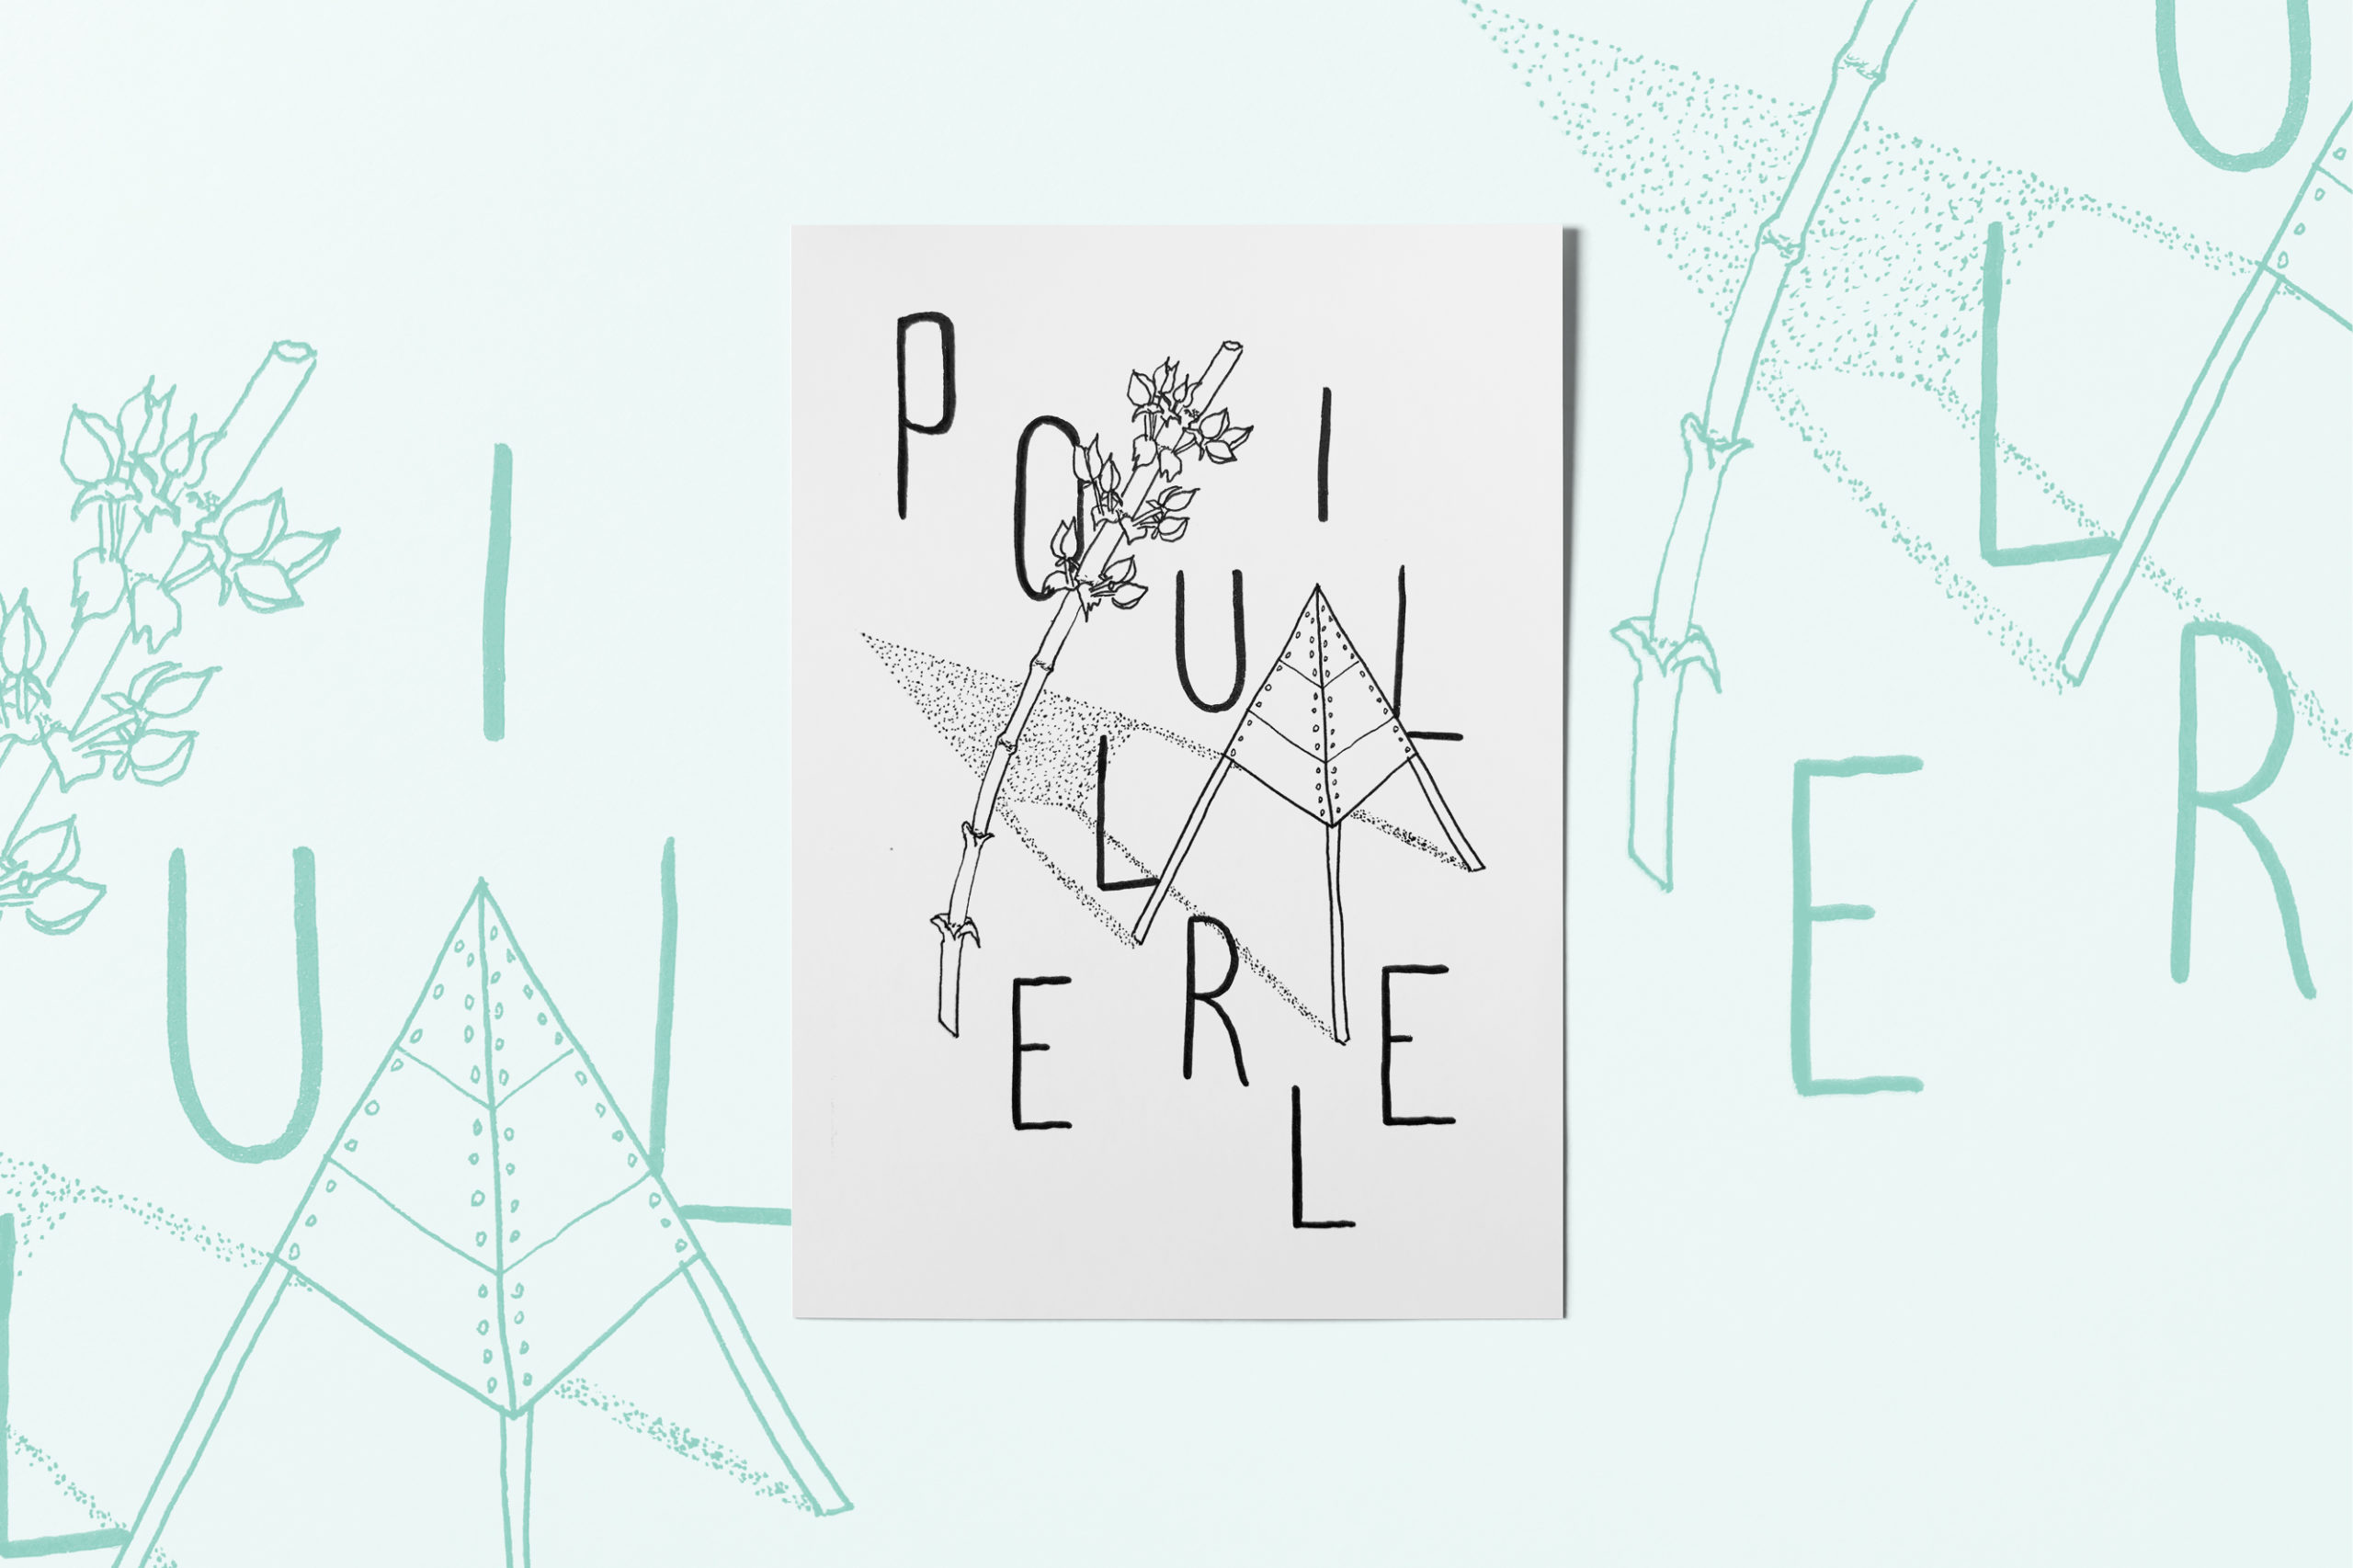 flyer-fun-carte-postale-postcard-illustration-graphic-design-pouillerel-la-chaux-de-fonds-atelier-tertre